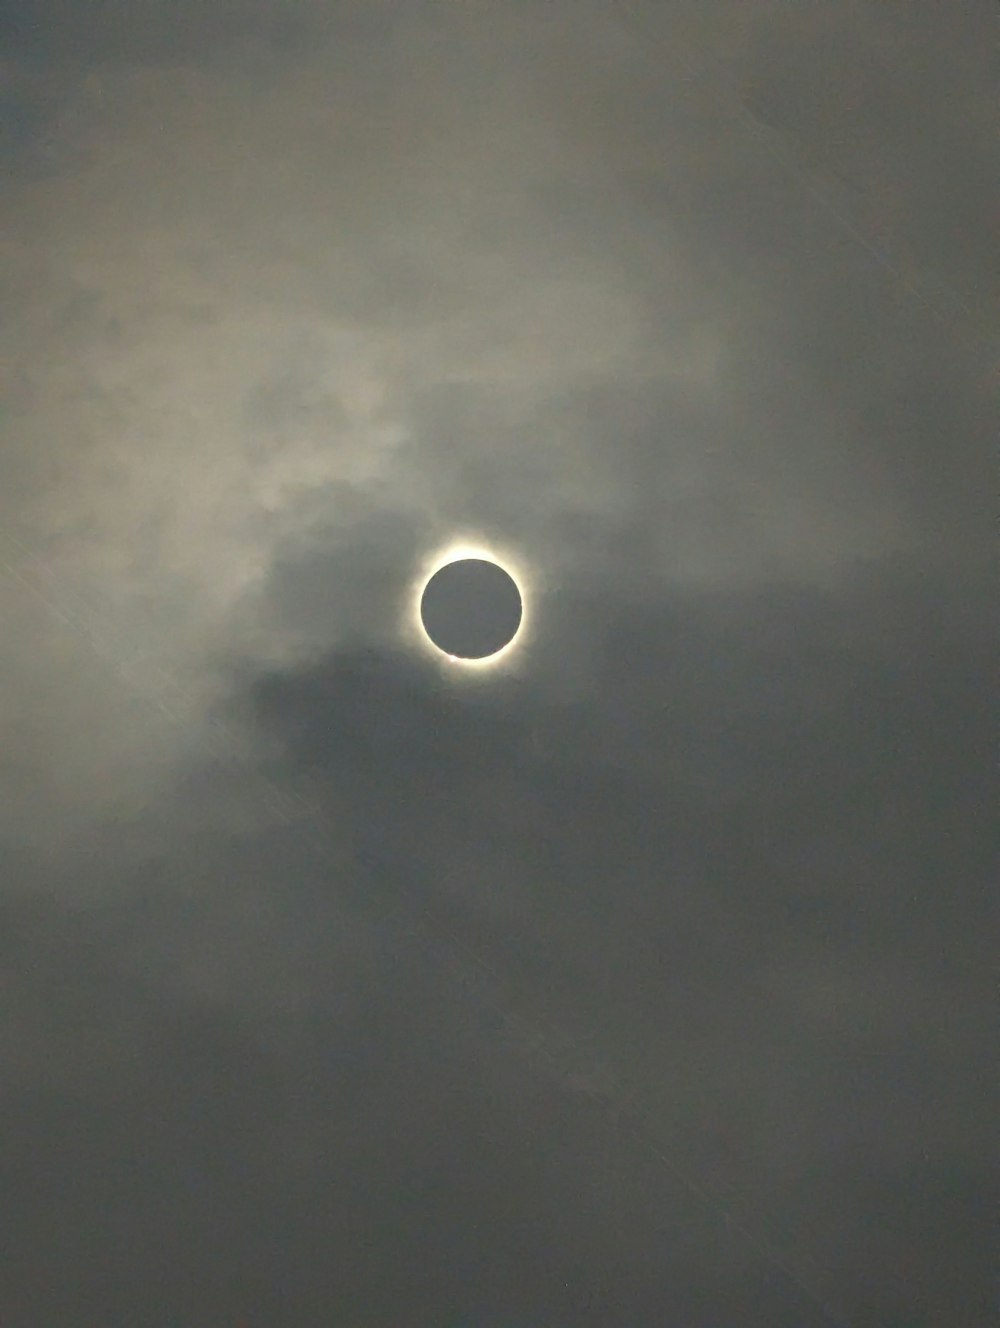 a solar eclipse seen through a cloudy sky